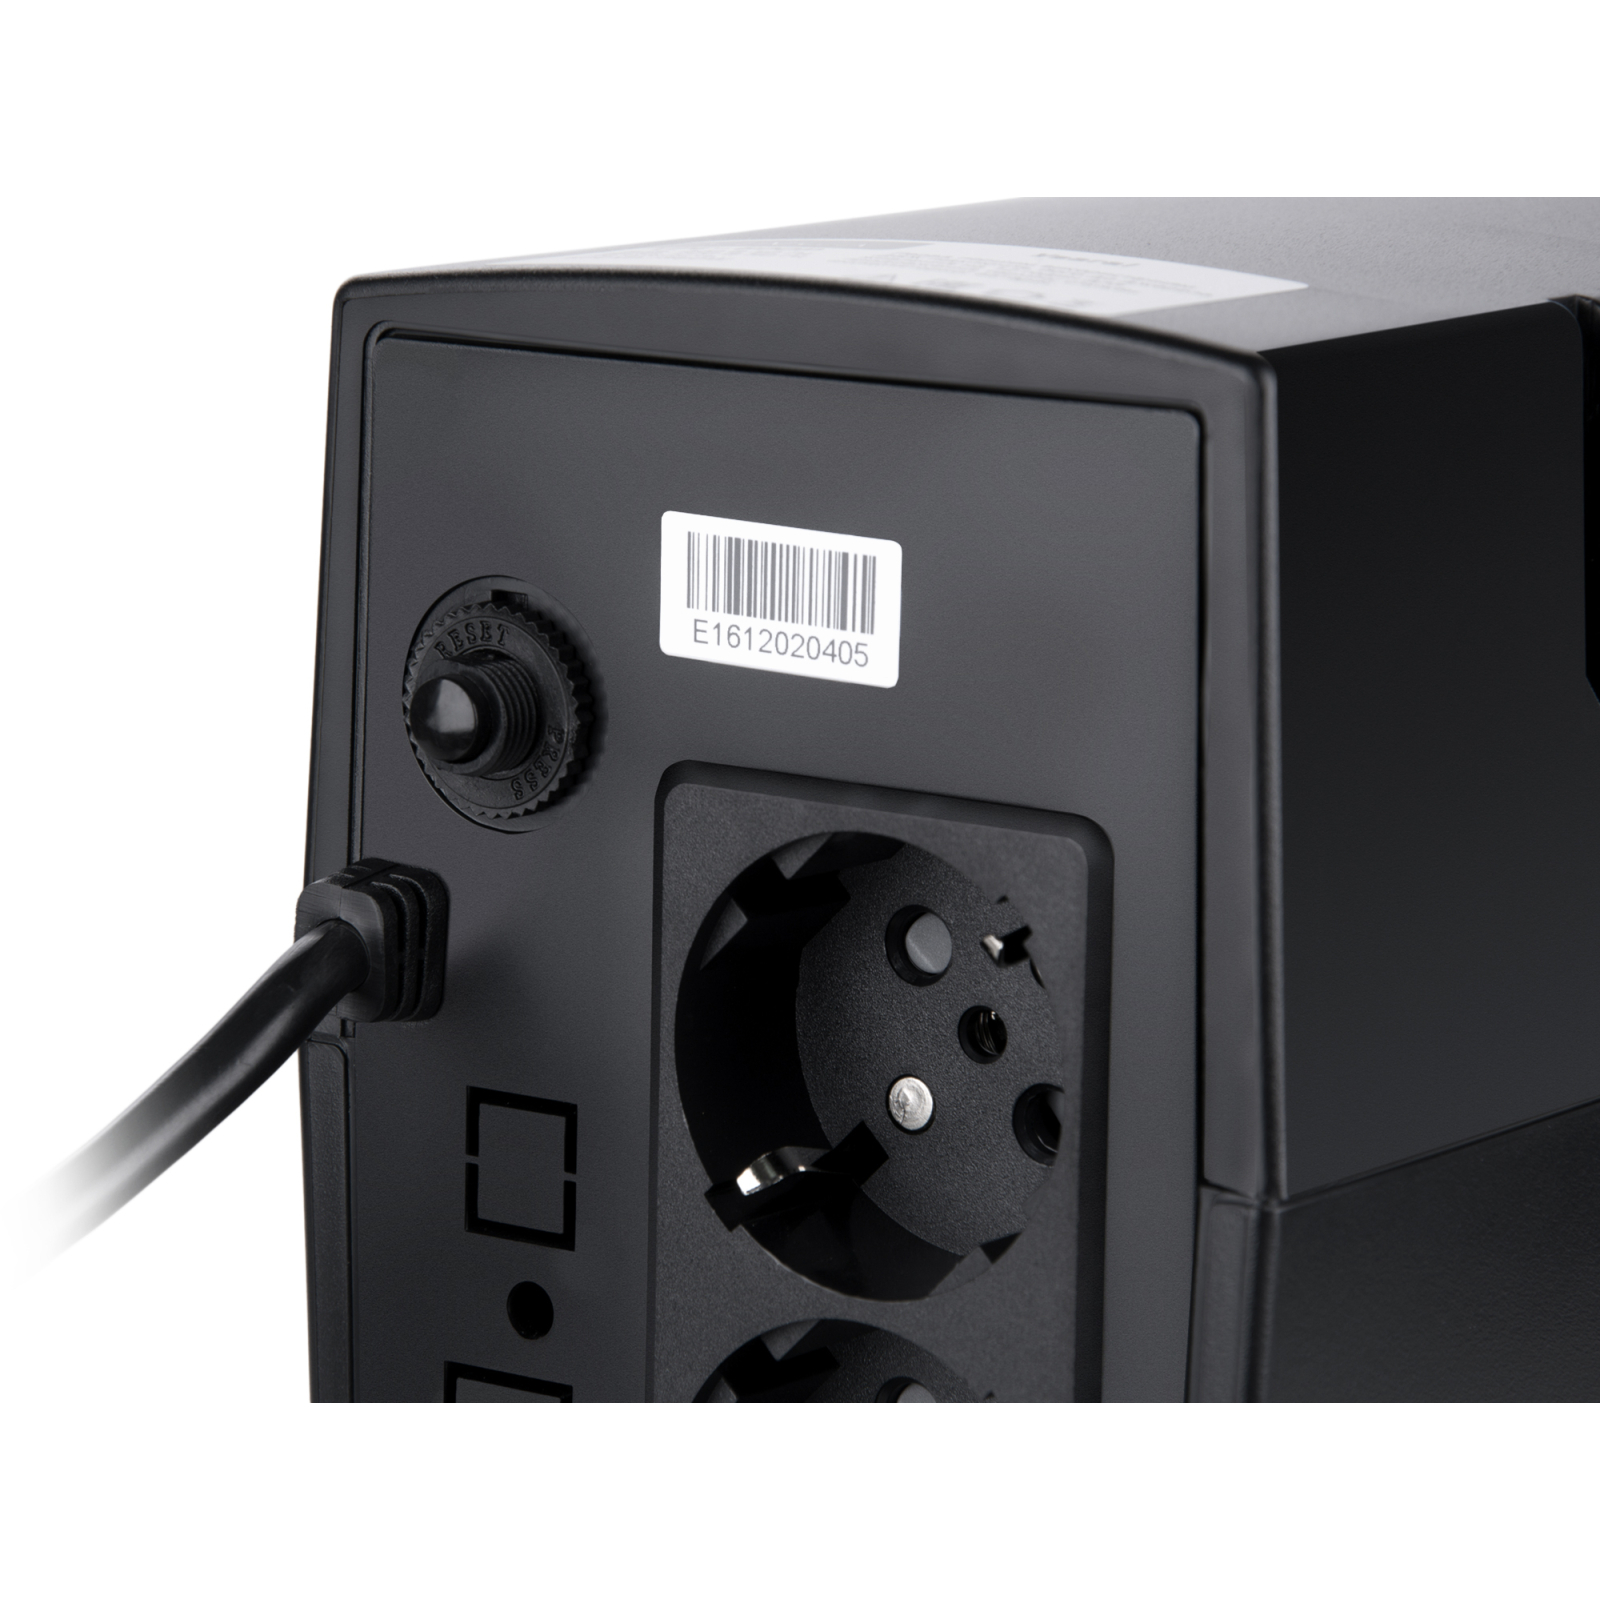 Пристрій безперебійного живлення Vinga LCD 1500VA plastic case (VPC-1500P) зображення 5